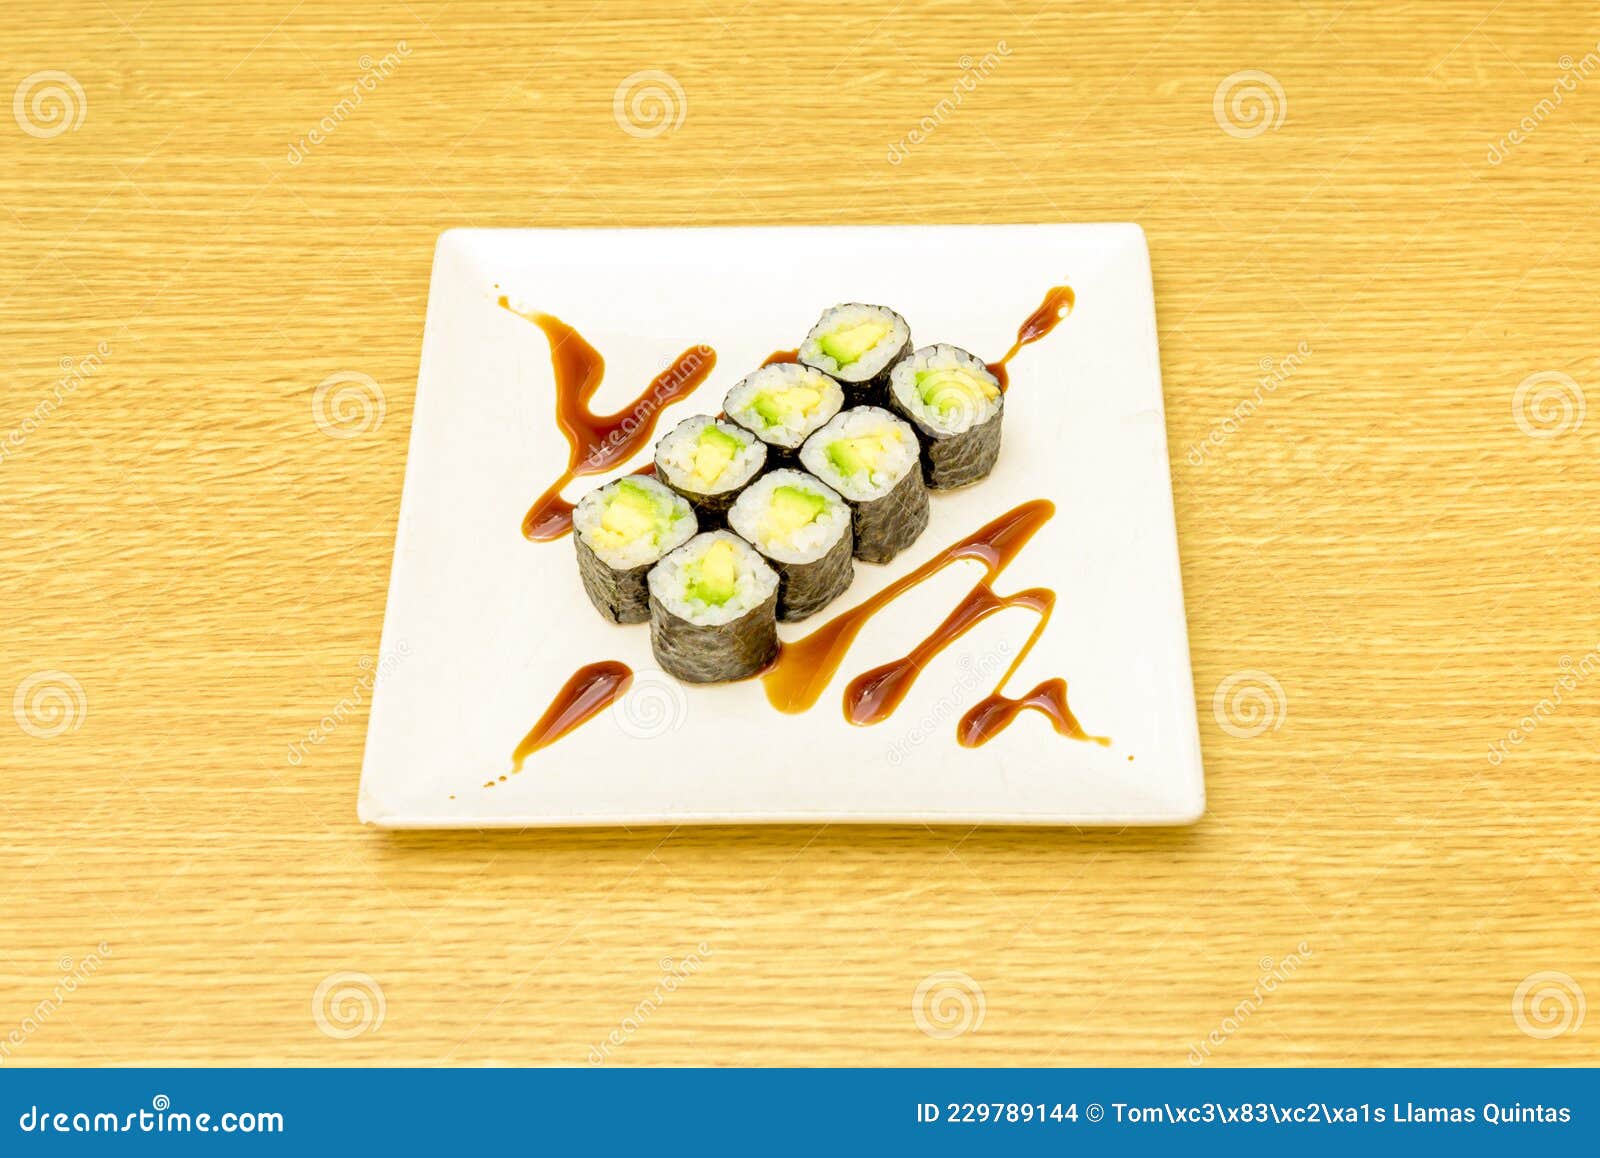 ocho piezas de sushi maki de aguacate maduro con arroz japones, algas nori